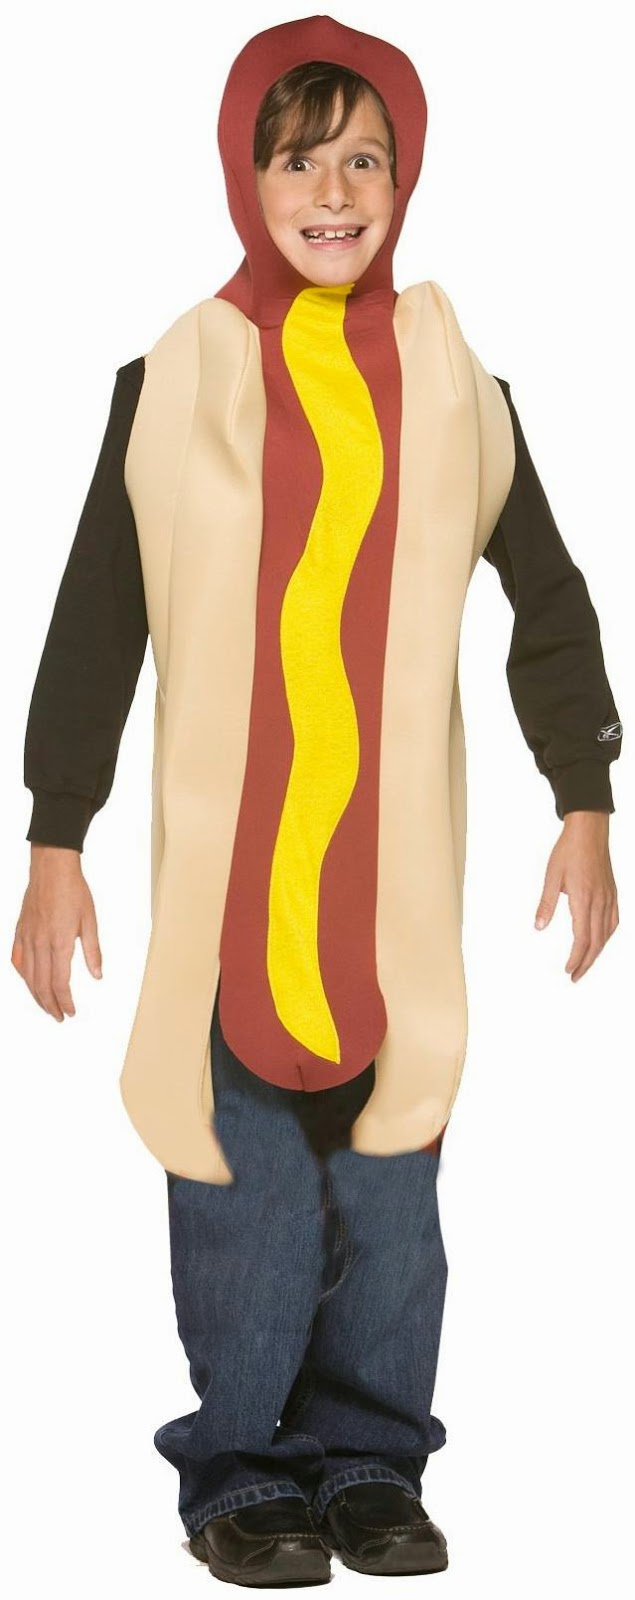 Hotdog_Child_Costume